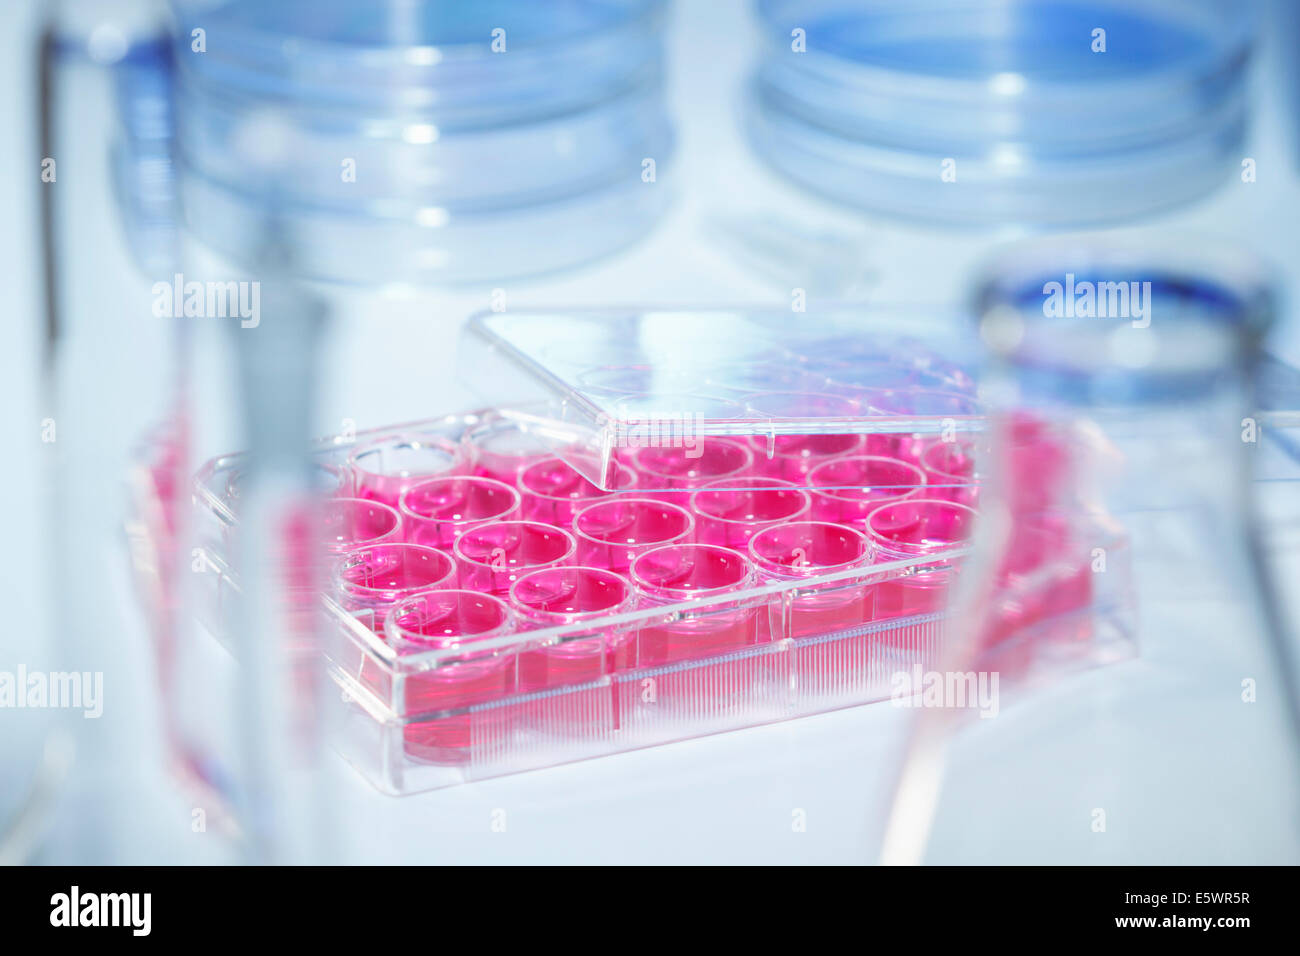 MultiWell Platte mit Zellkulturmedium (DMEM) umgeben von Labor Fläschchen Stockfoto